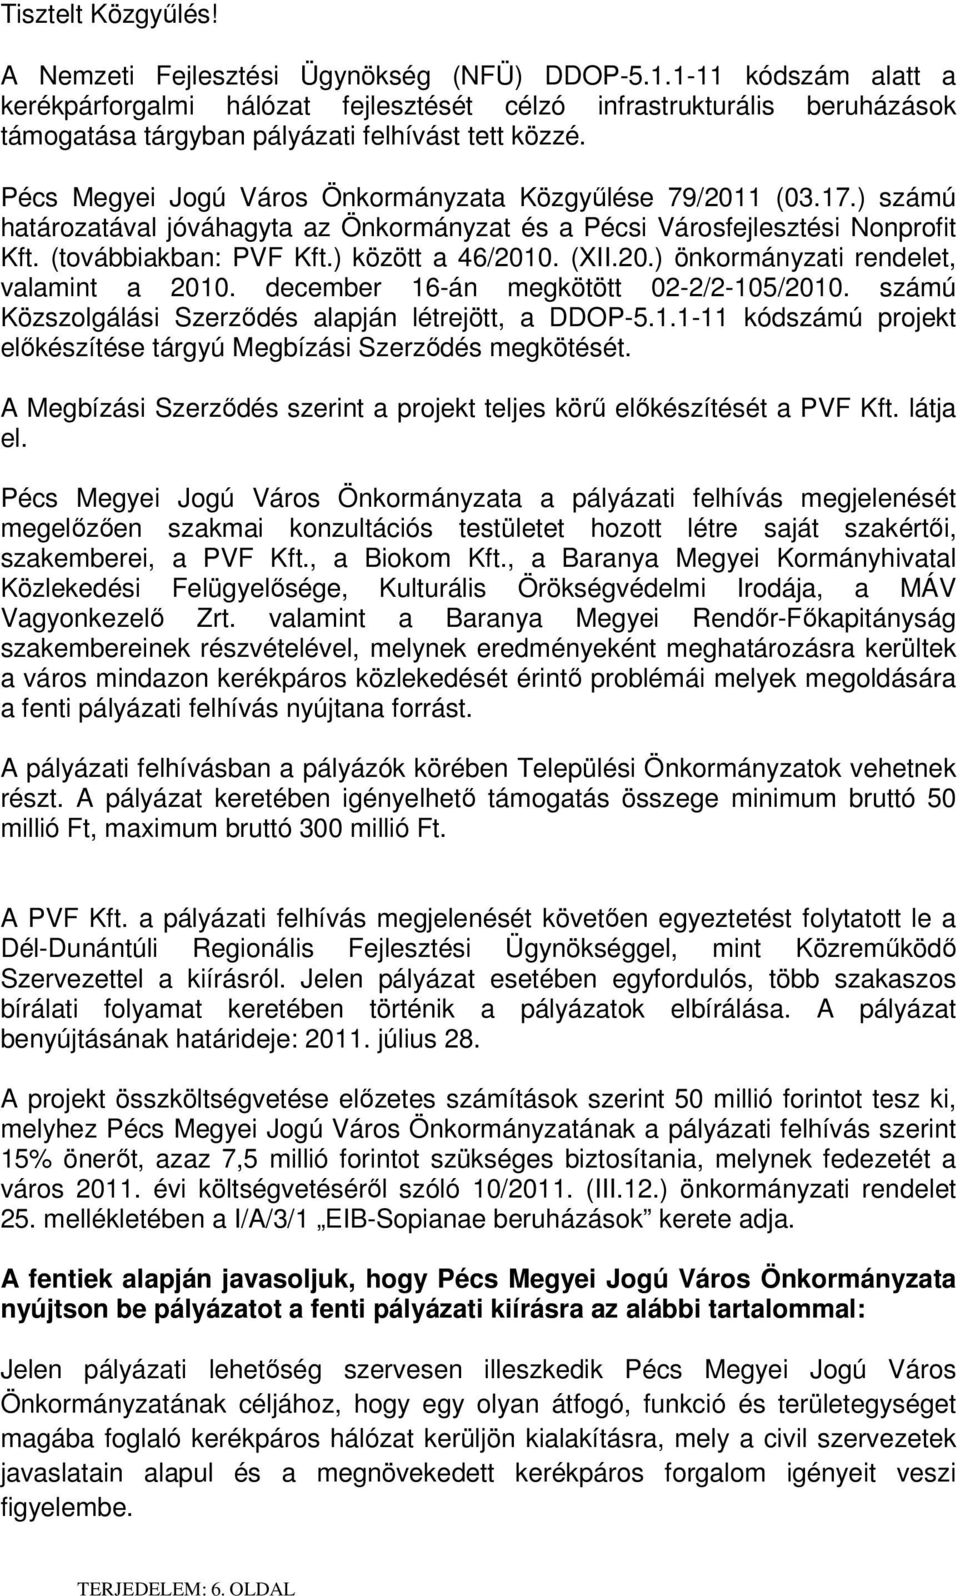 Pécs Megyei Jogú Város Önkormányzata Közgyűlése 79/2011 (03.17.) számú határozatával jóváhagyta az Önkormányzat és a Pécsi Városfejlesztési Nonprofit Kft. (továbbiakban: PVF Kft.) között a 46/2010.